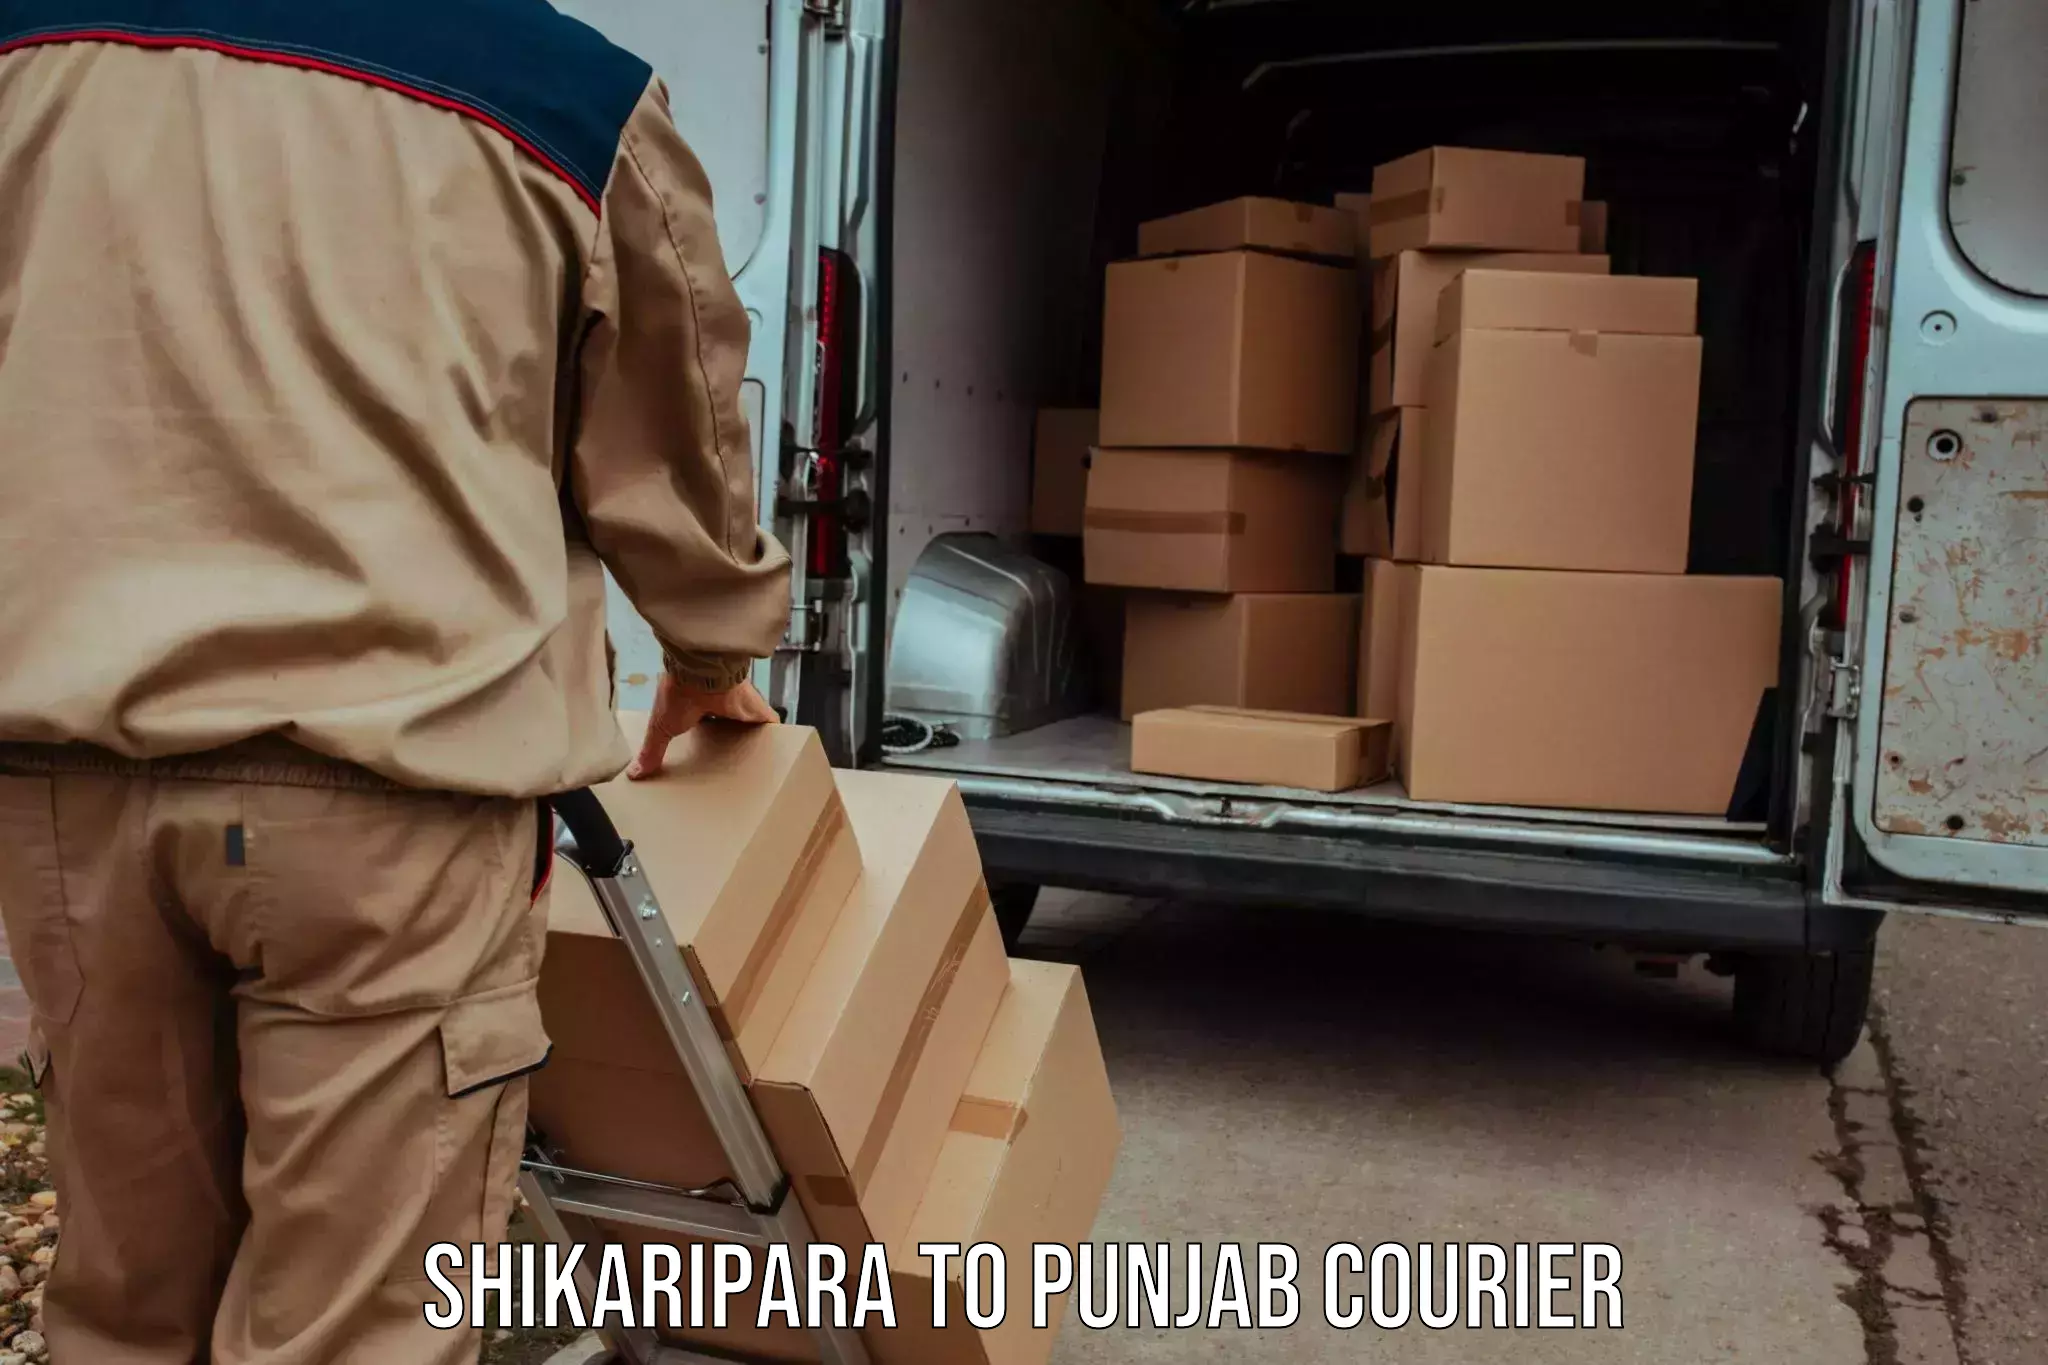 Regular parcel service Shikaripara to Sangrur